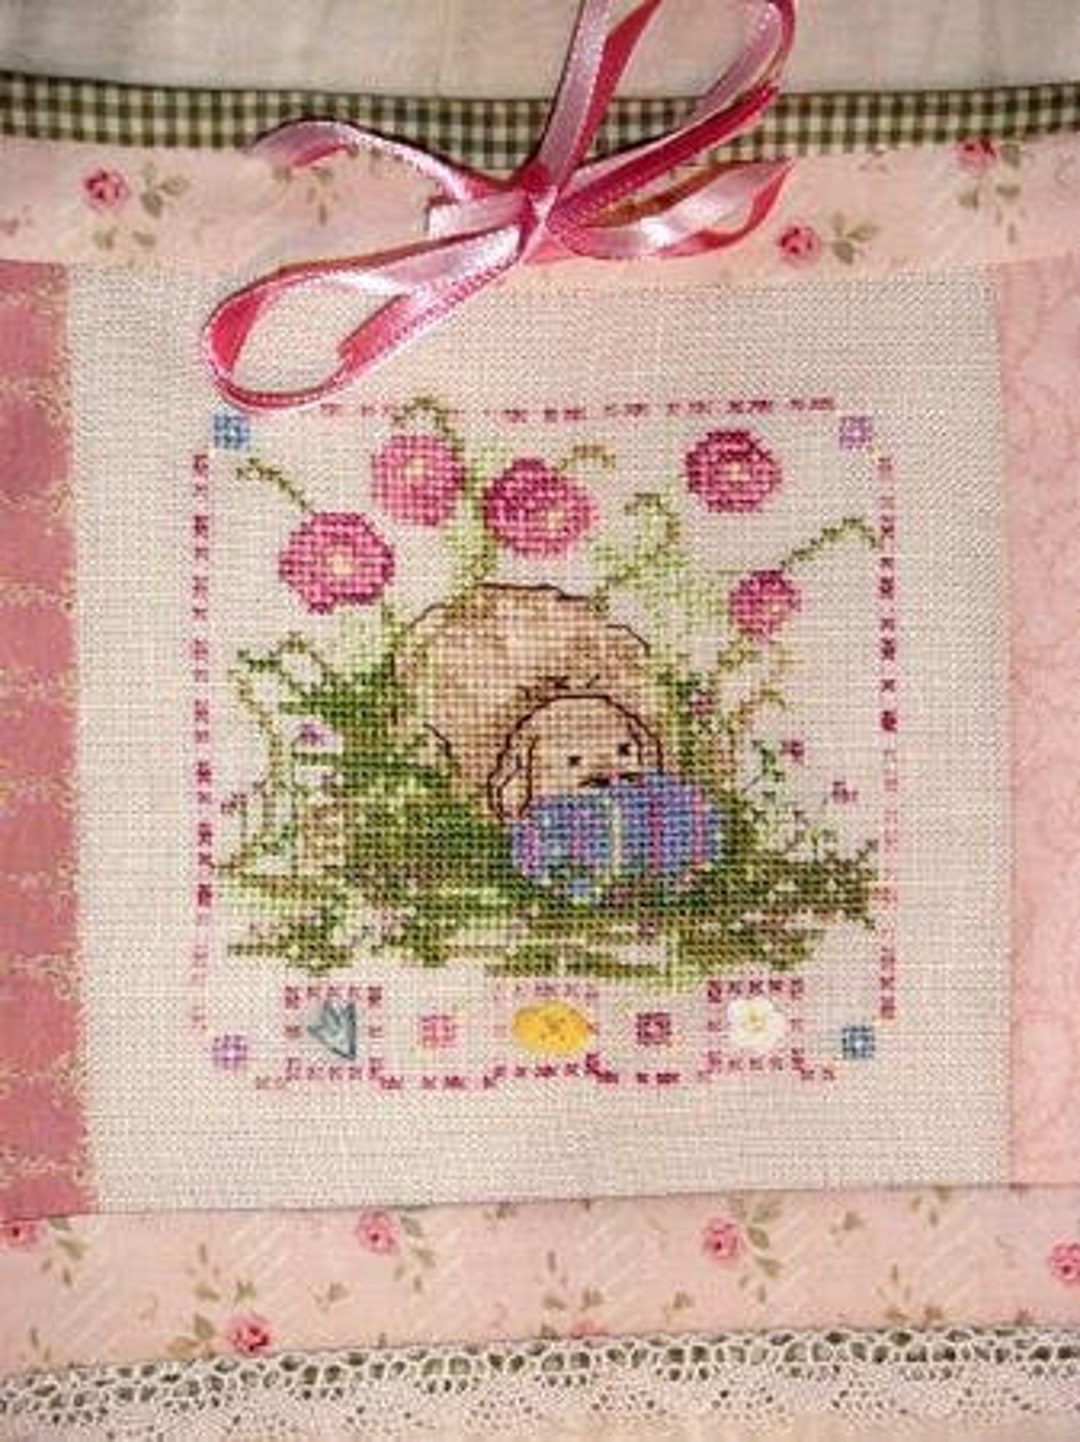 Country Garden Stitchery miss Flopsy's Egg - Etsy